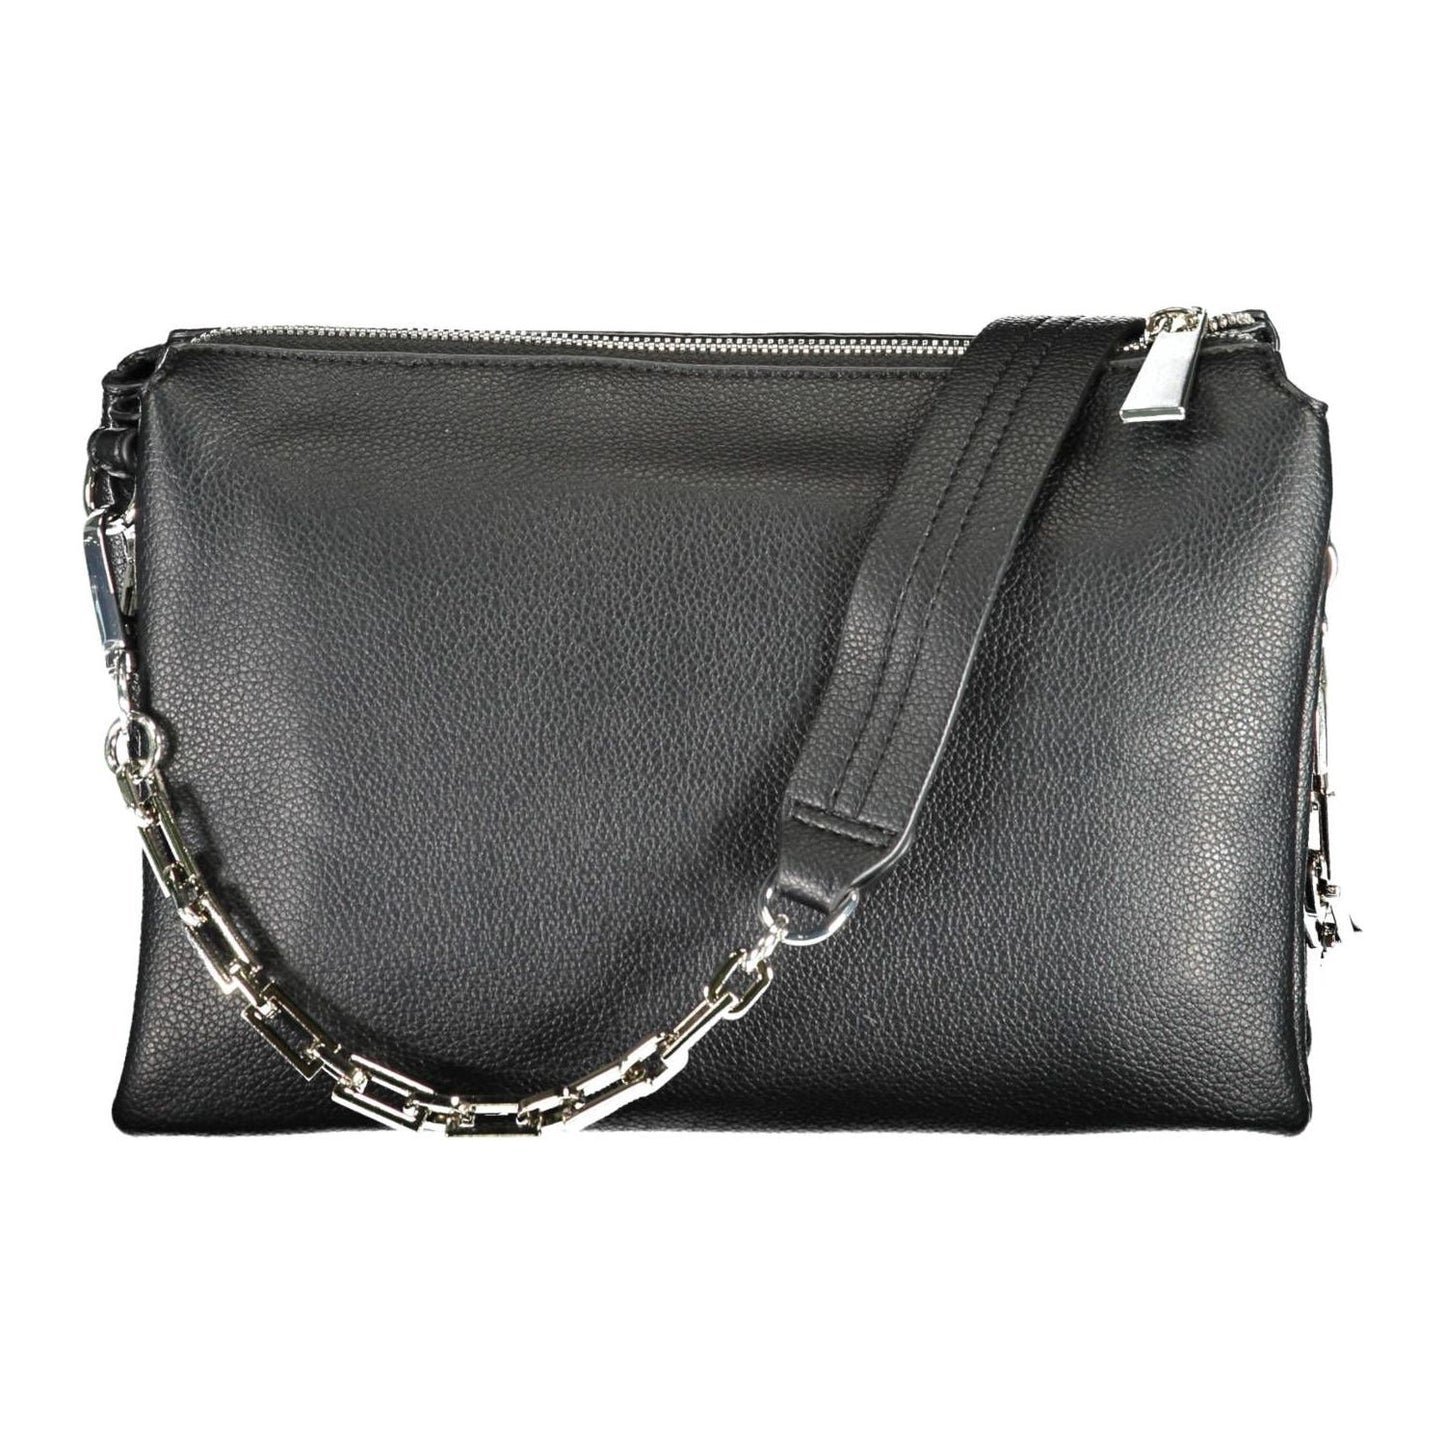 BYBLOS Elegant Chain-Handle Black Shoulder Bag elegant-chain-handle-black-shoulder-bag